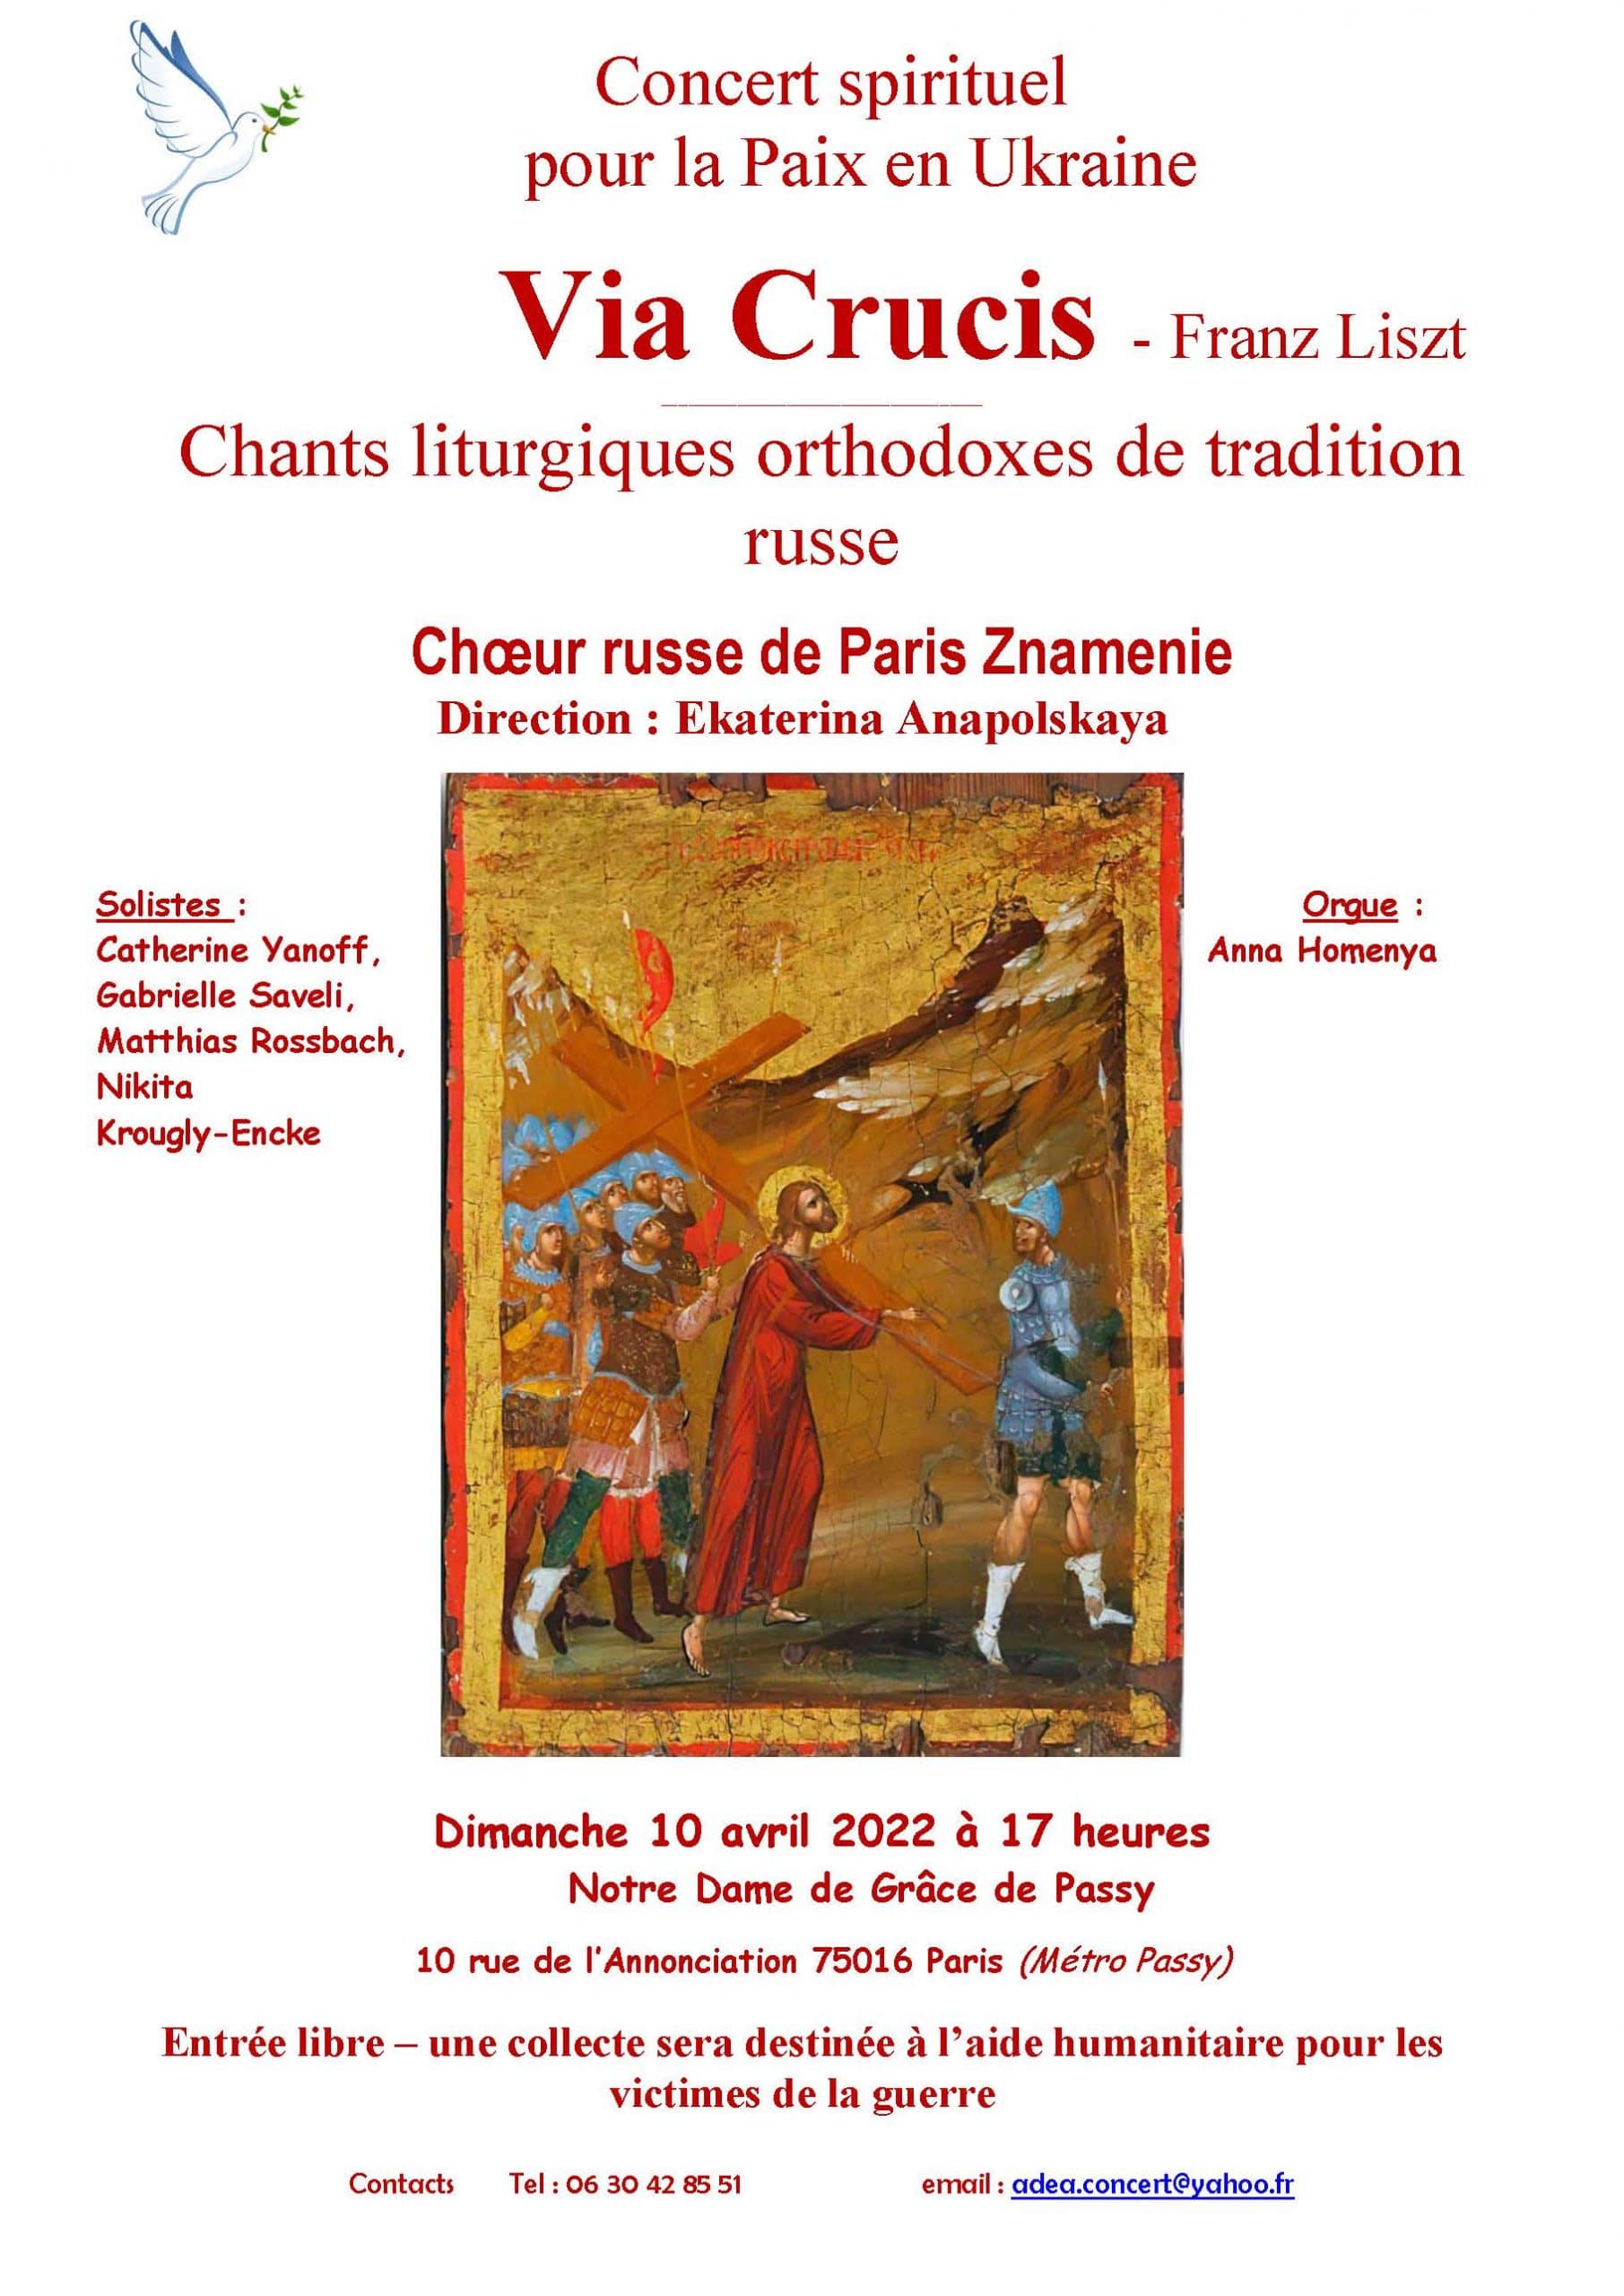 Concerts du chœur « znamenie » le 9 et le 10 avril 2022